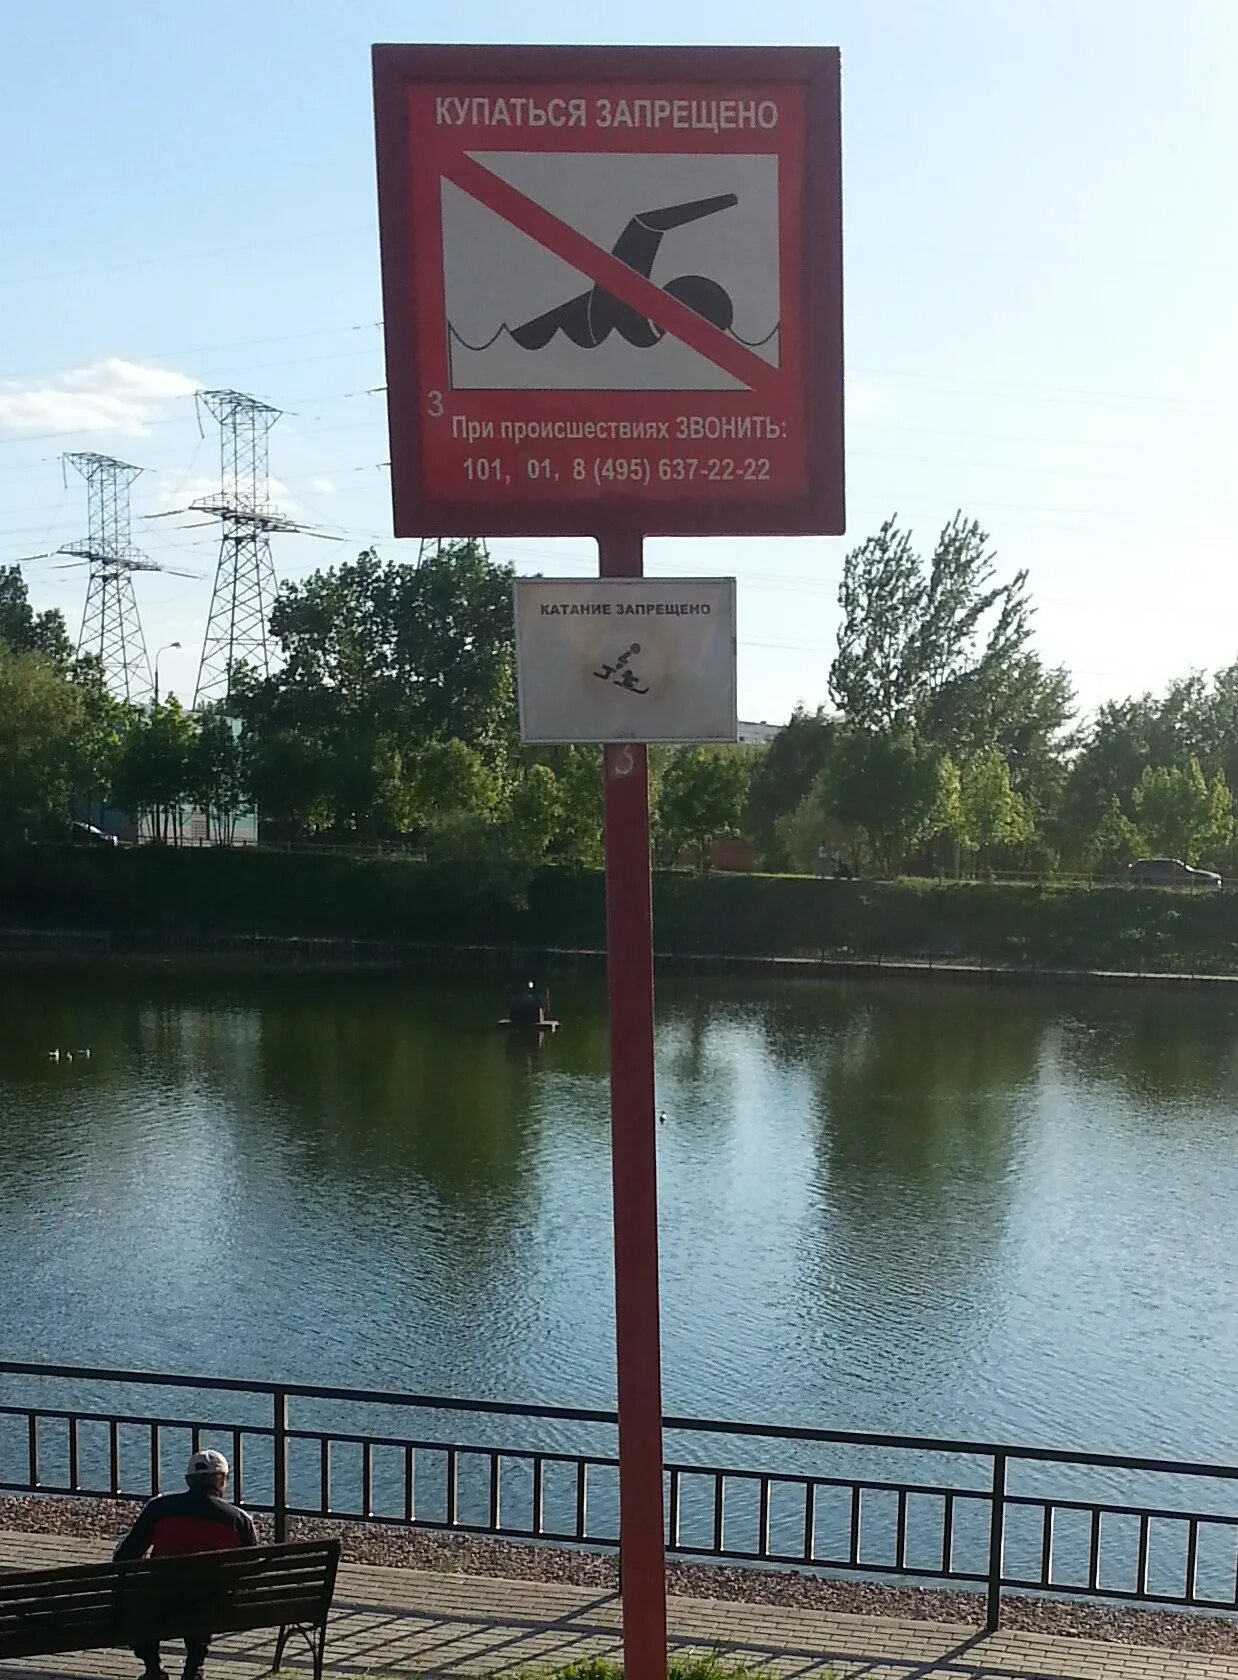 Купаться запрещено картинки. Купаться запрещено. Купать запрещено. Знак «купаться запрещено». Купание запрещено табличка.